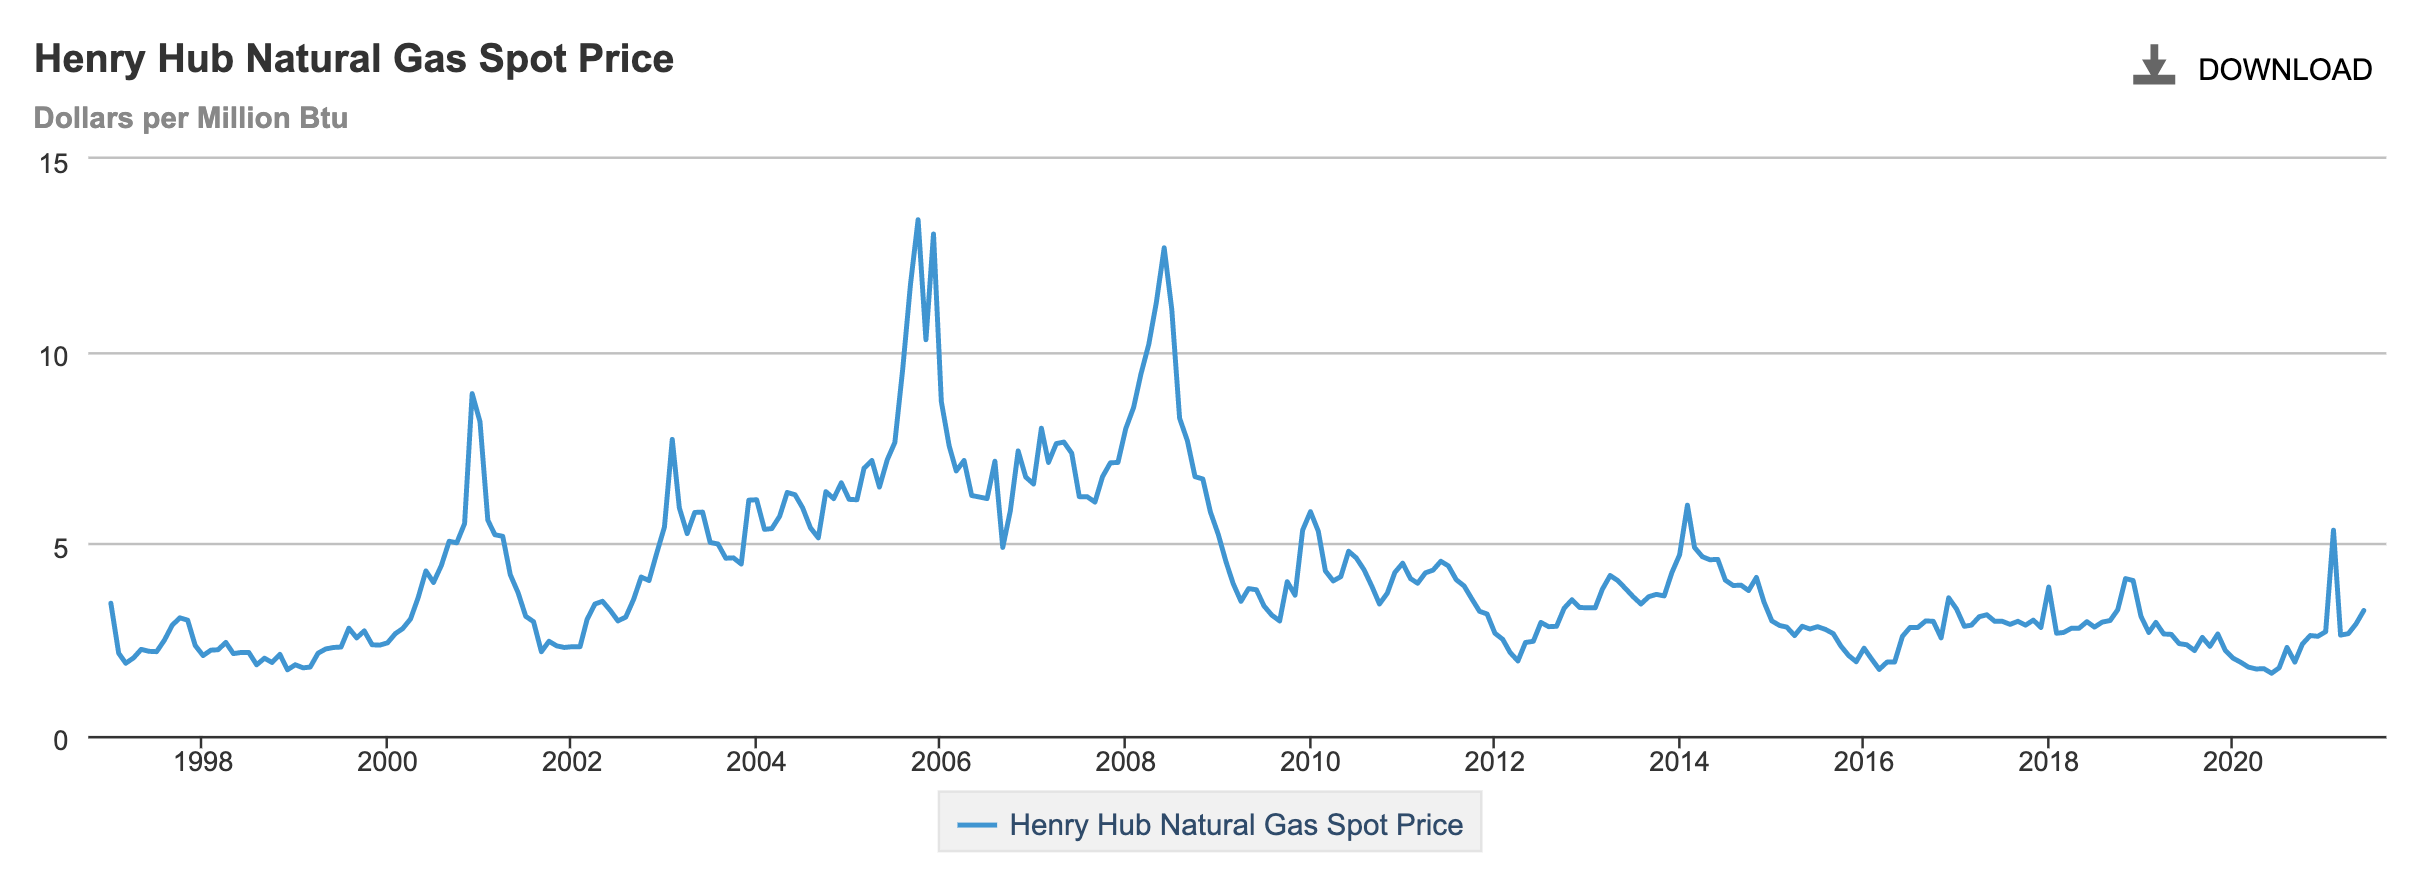 Ceny zemního plynu v obchodním bodě Henry hub